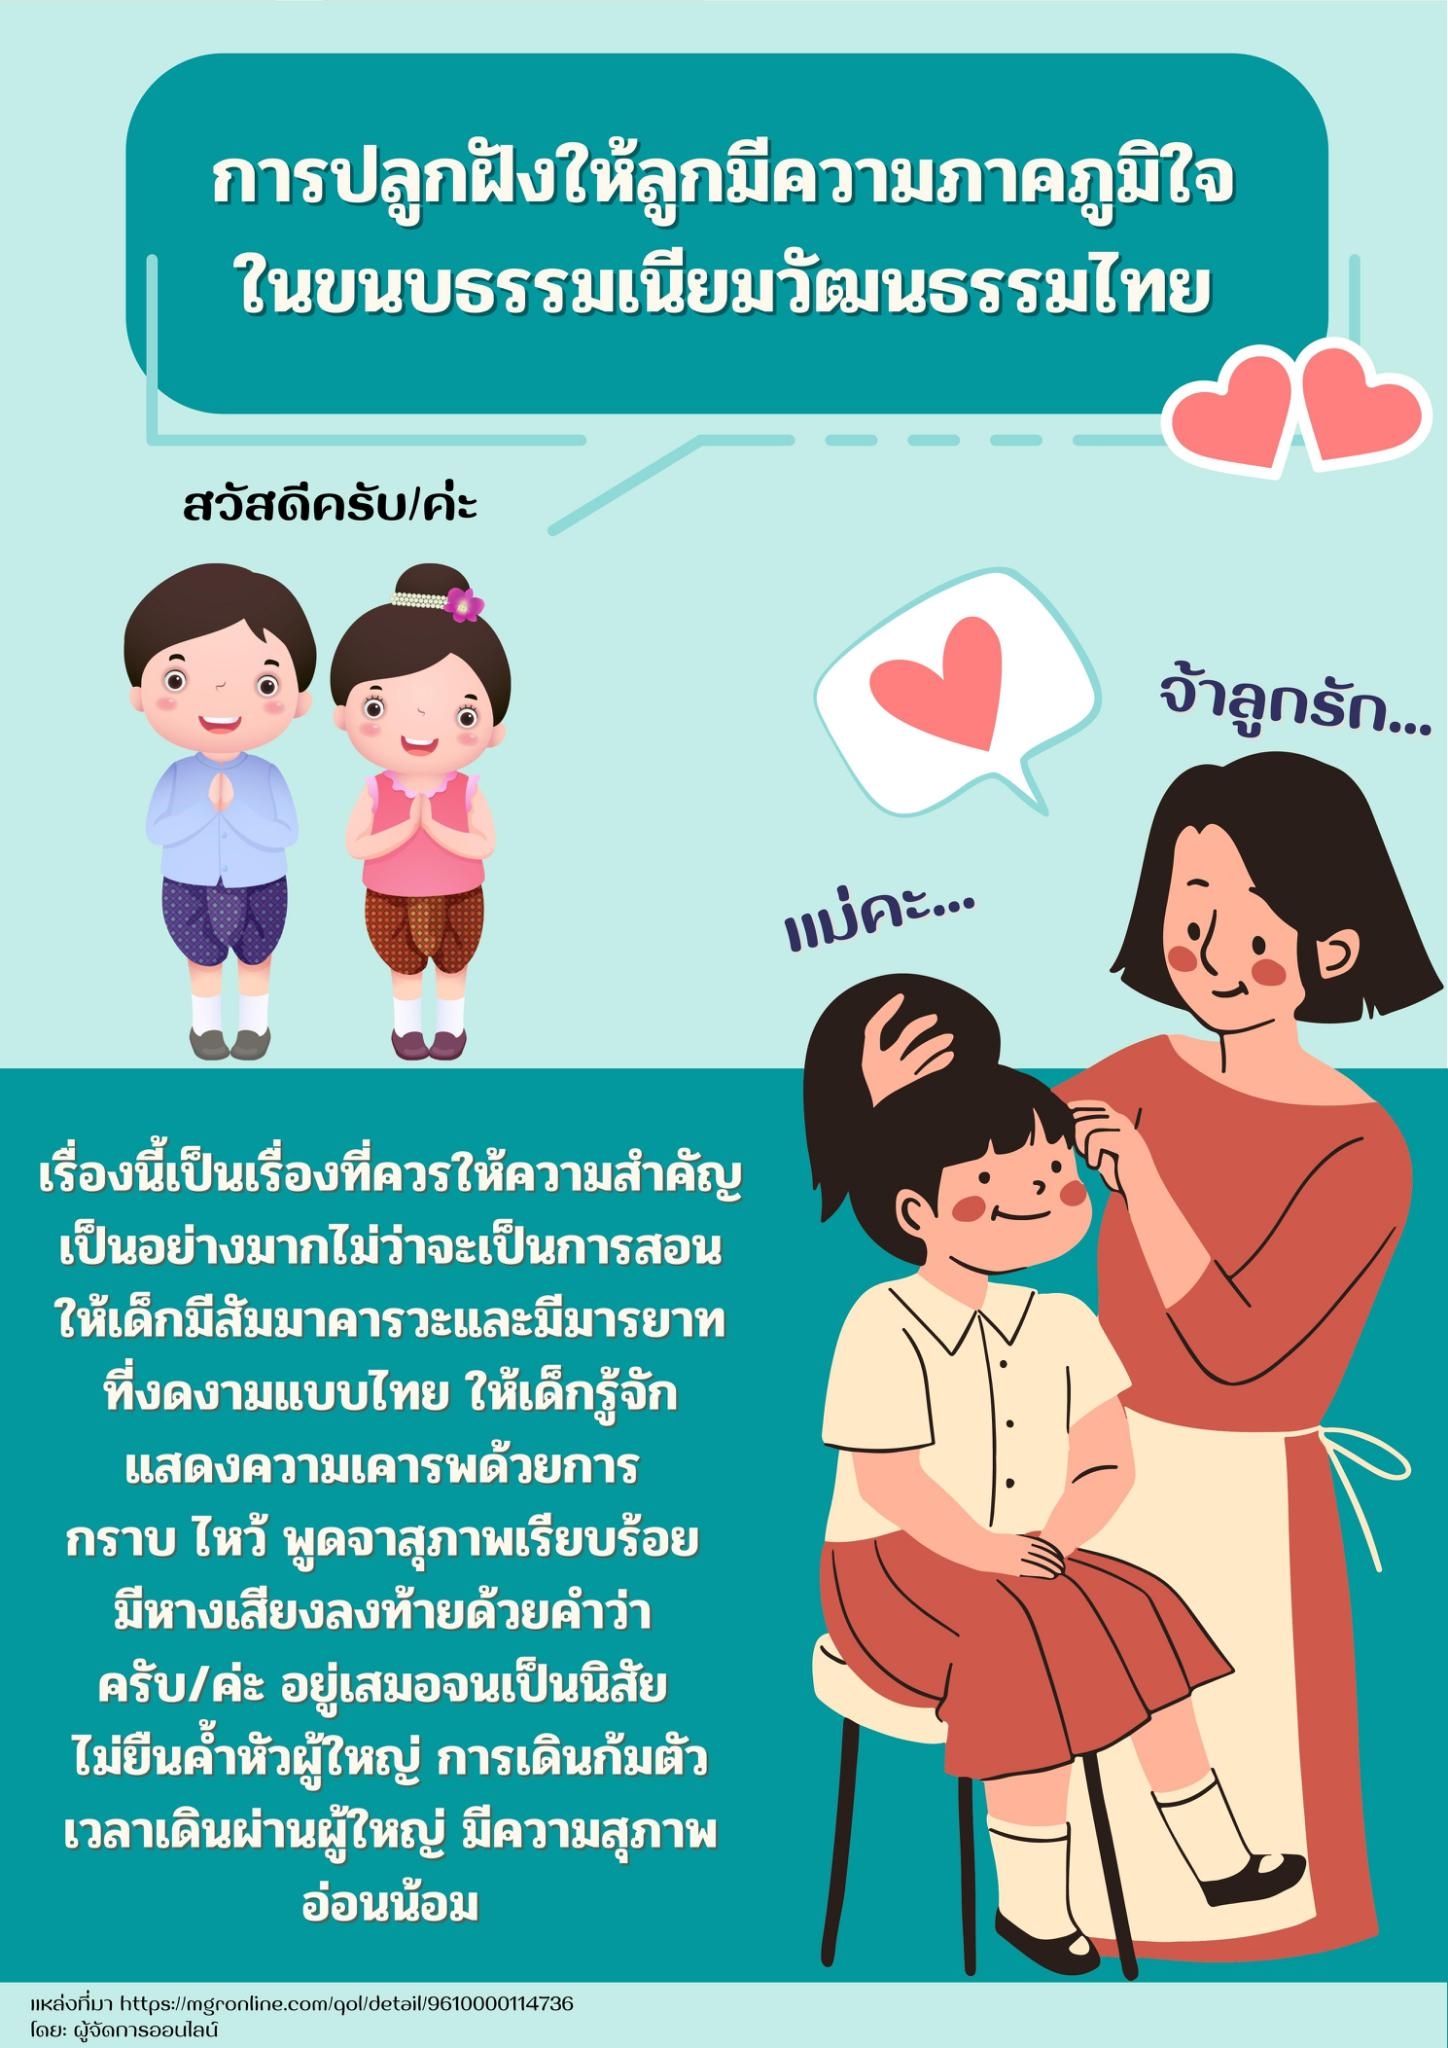 การปลูกฝังให้ลูกมีความภาคภูมิใจในขนบธรรมเนียมวัฒนธรรมไทย